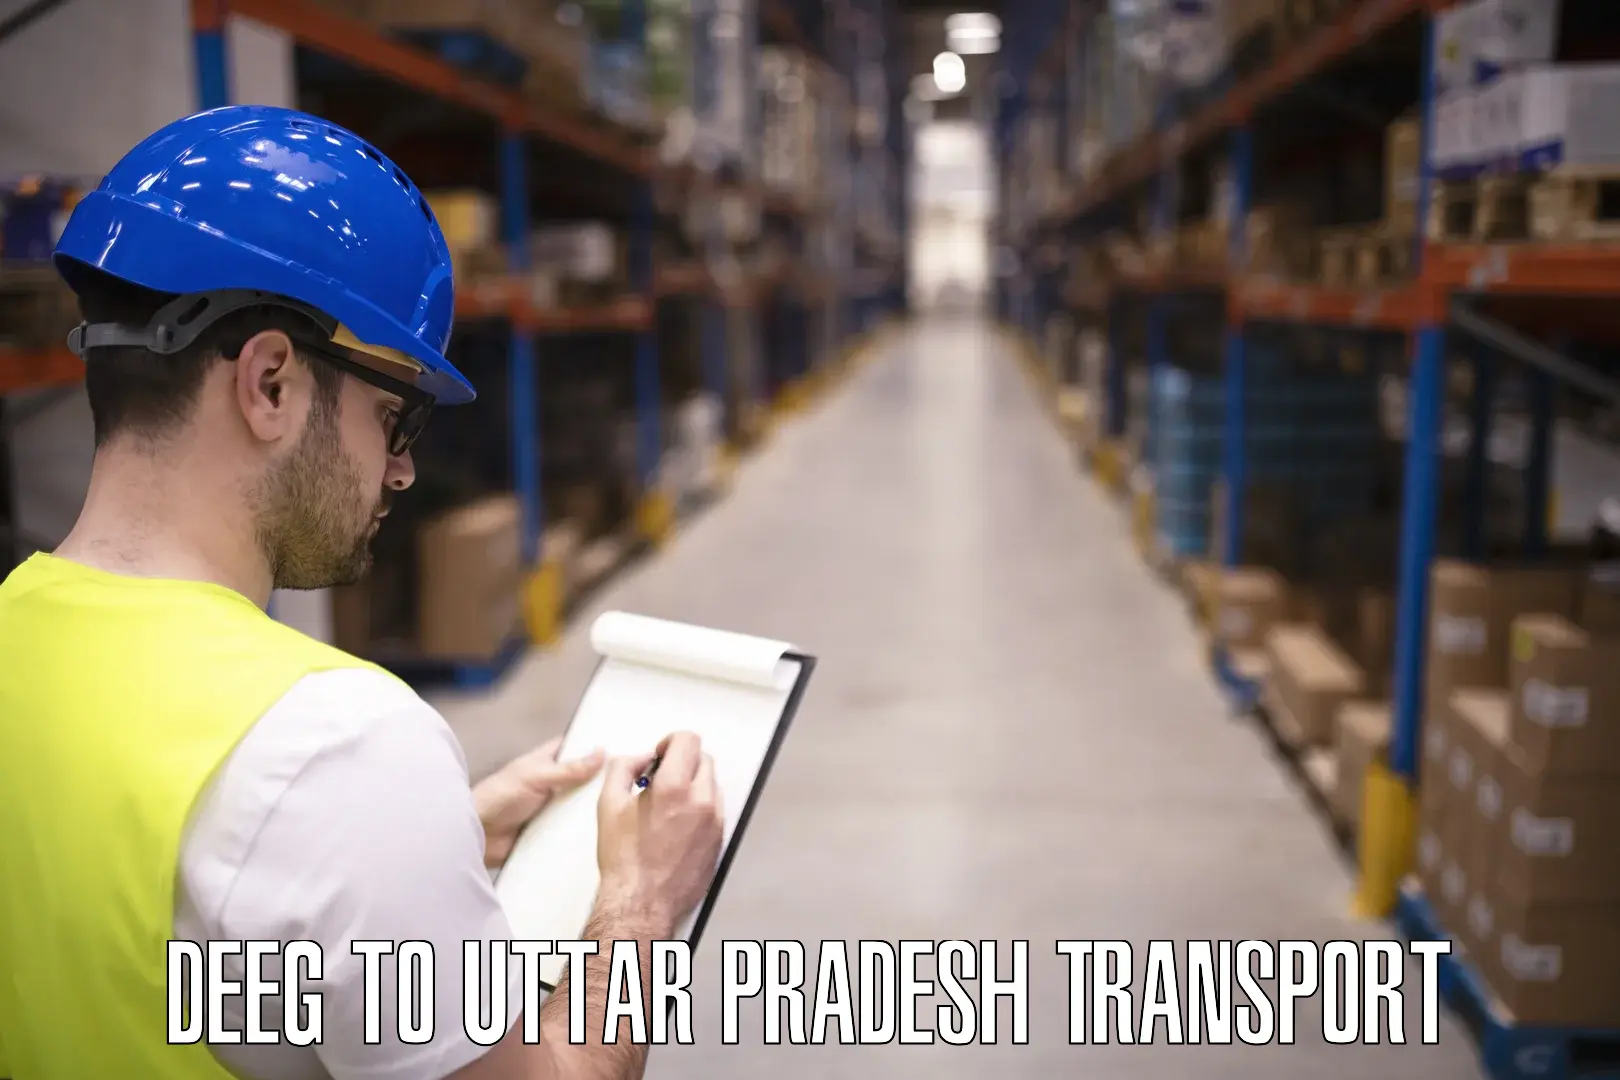 International cargo transportation services Deeg to Uttar Pradesh